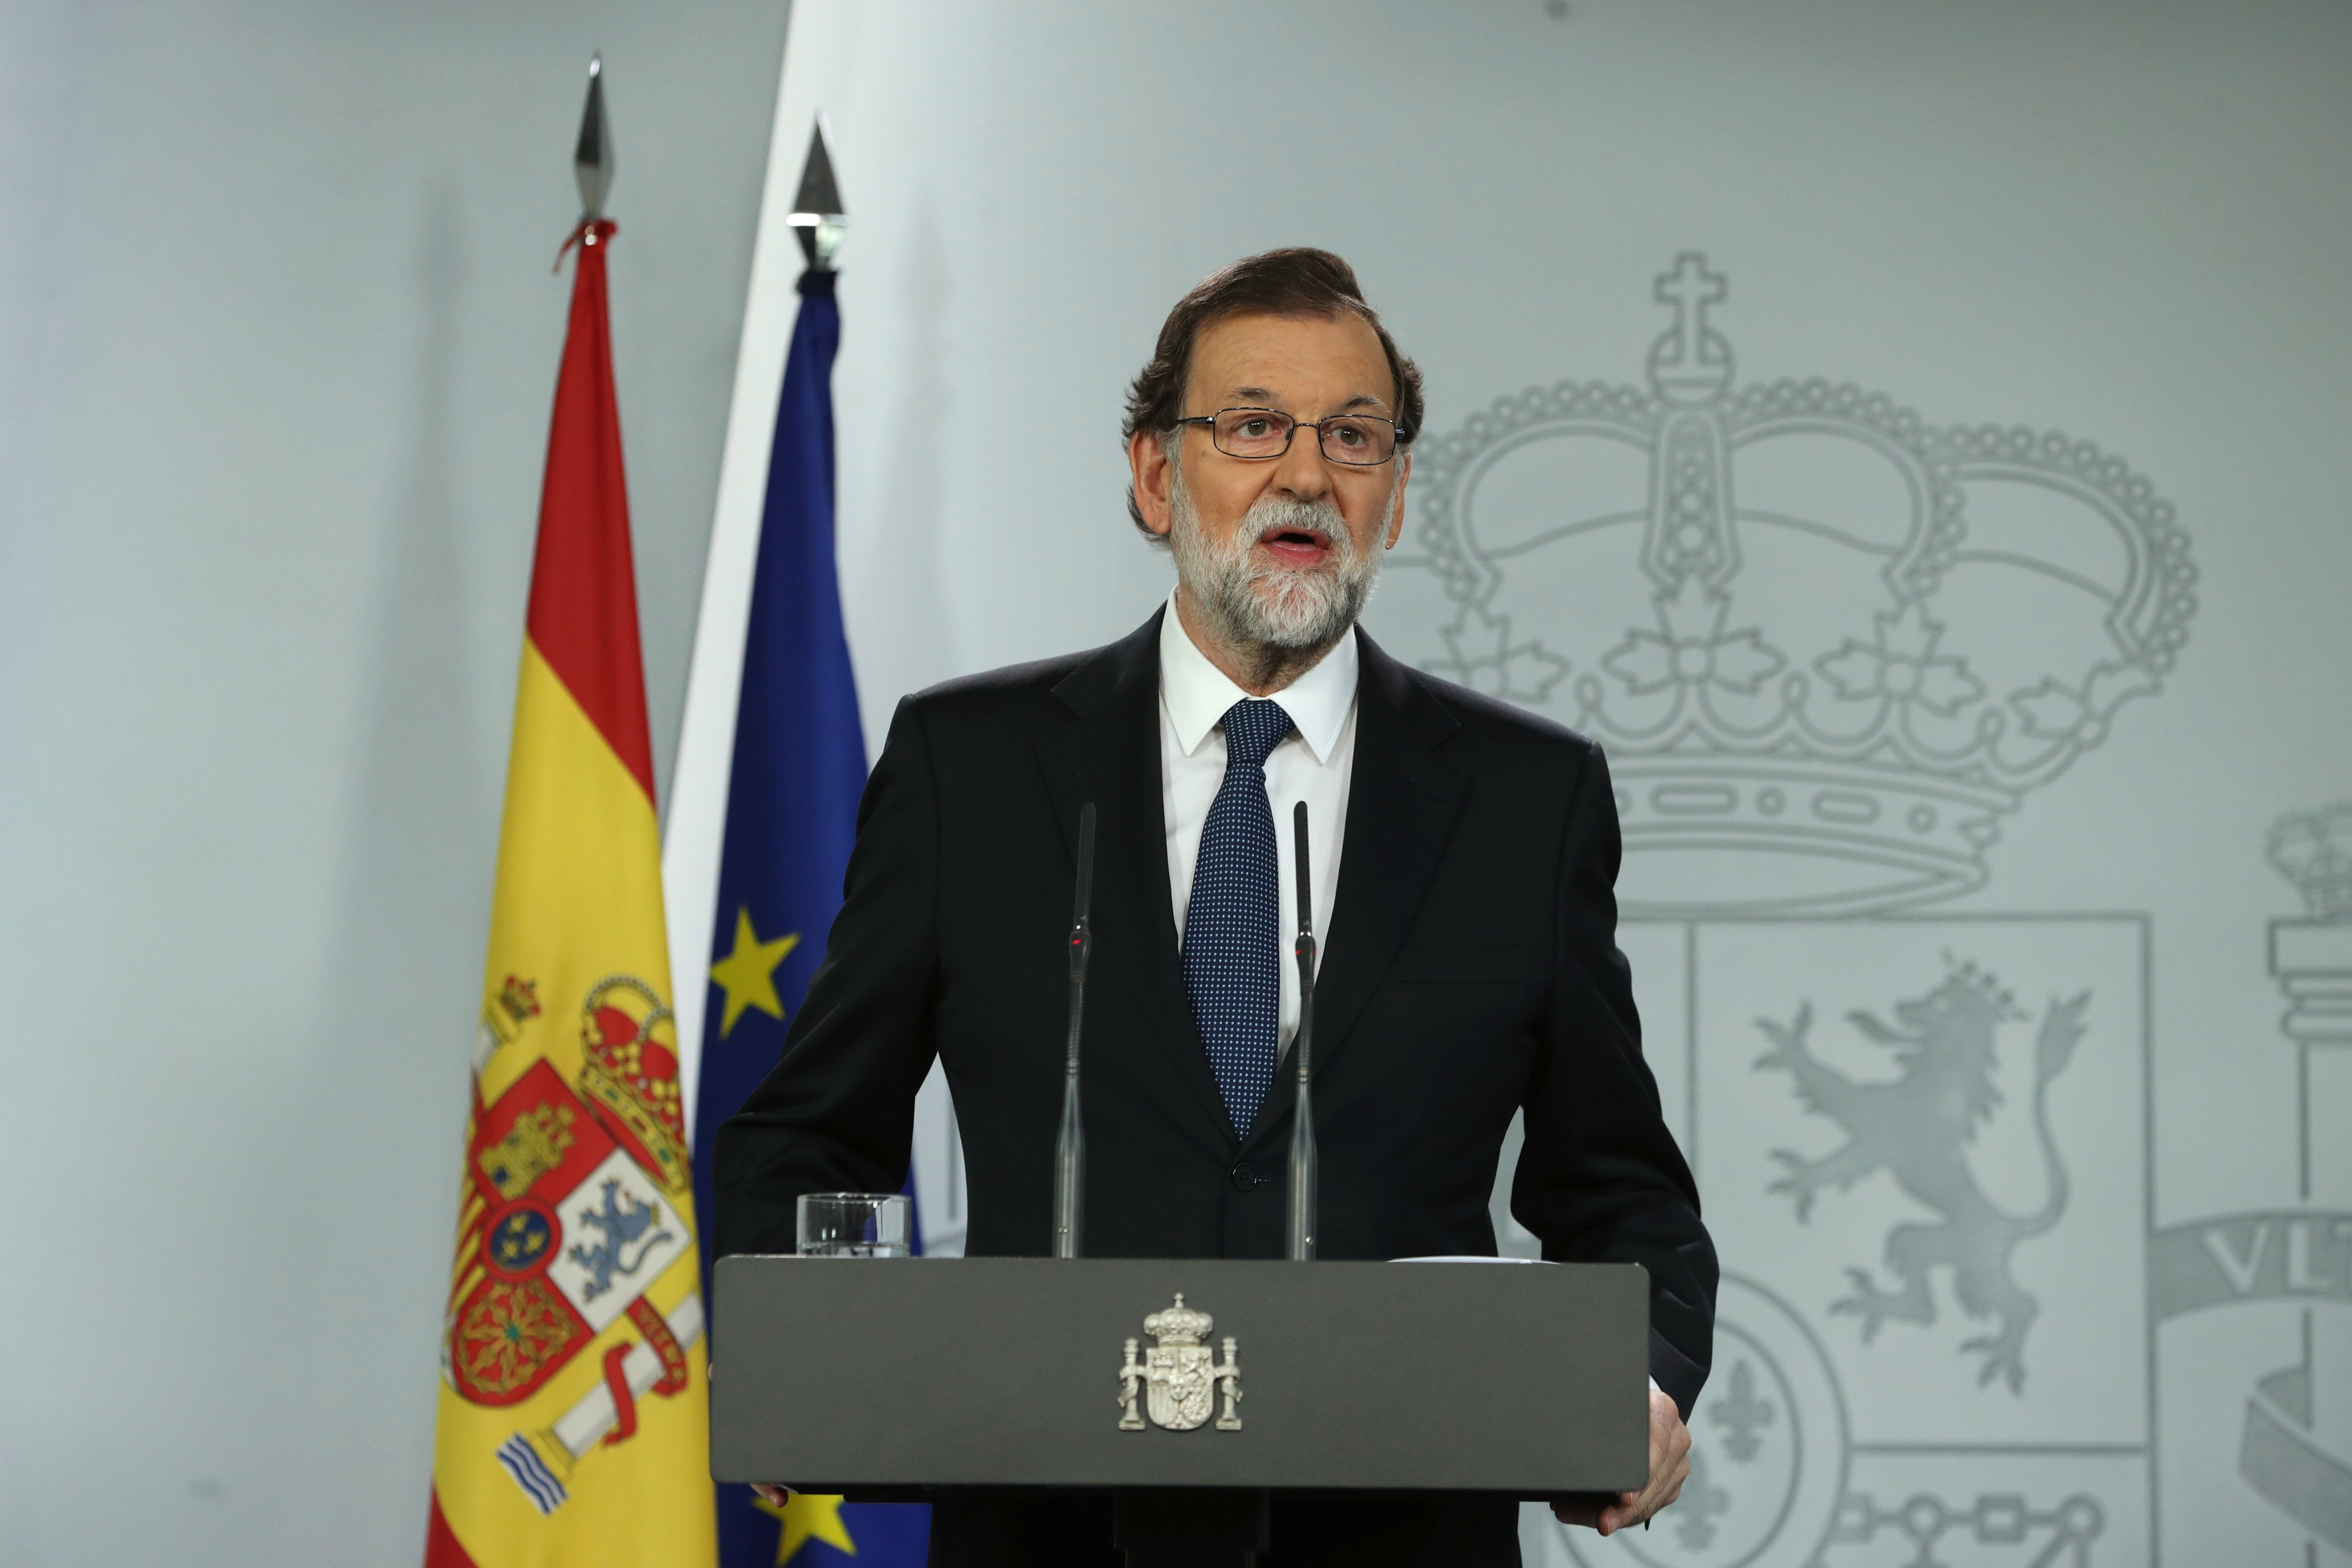 Hoy no ha habido un referéndum, ha habido una escenificación: Rajoy